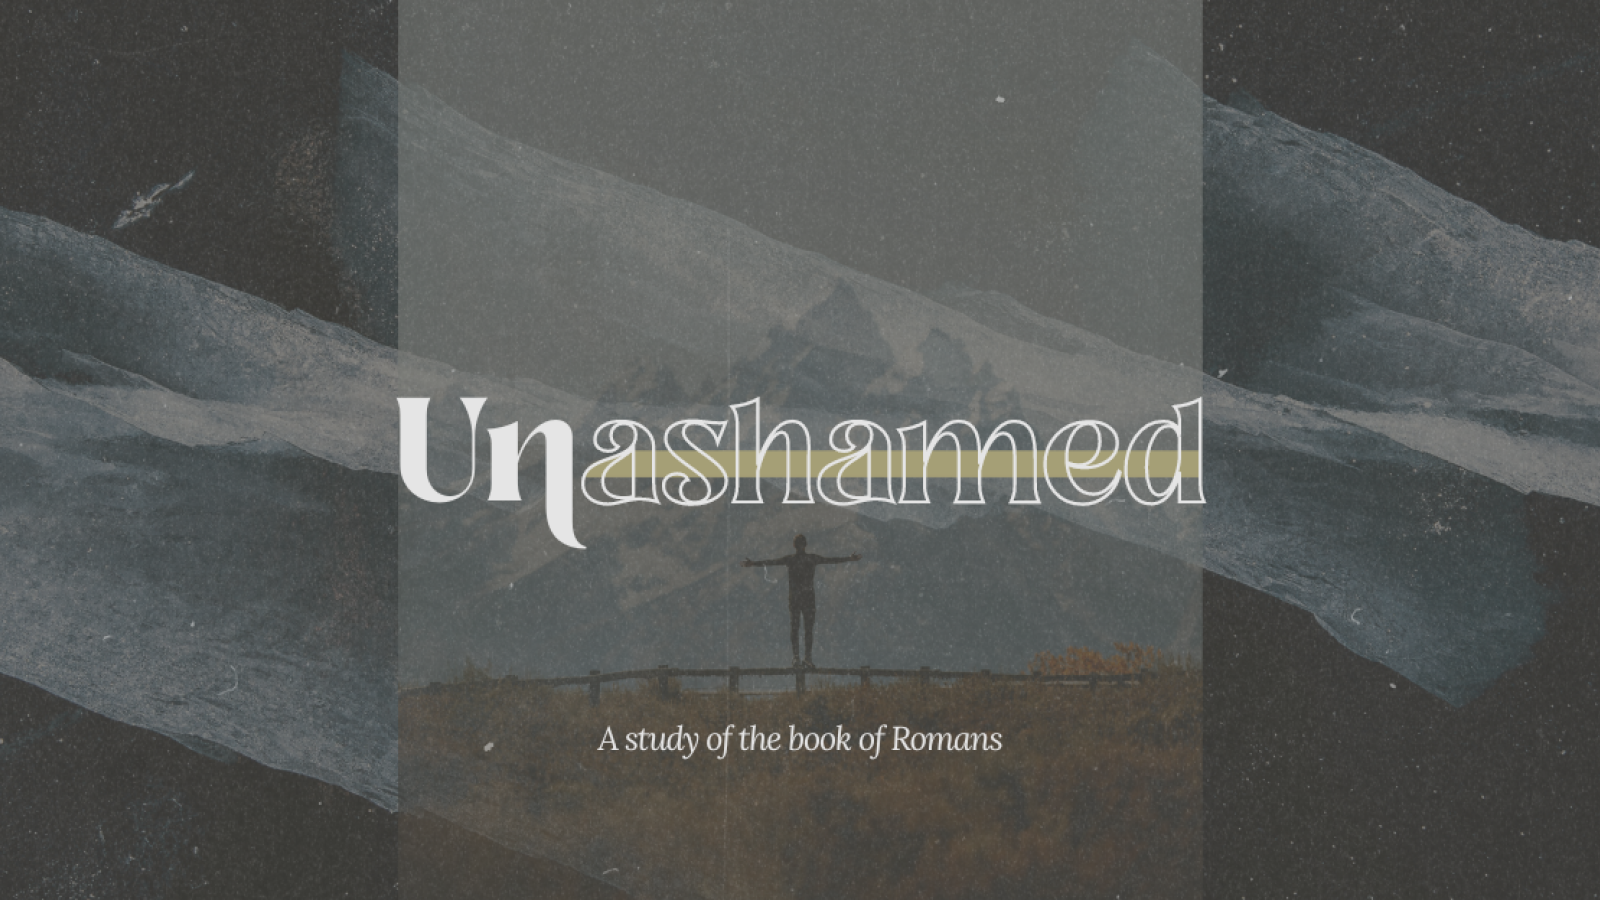 Unashamed